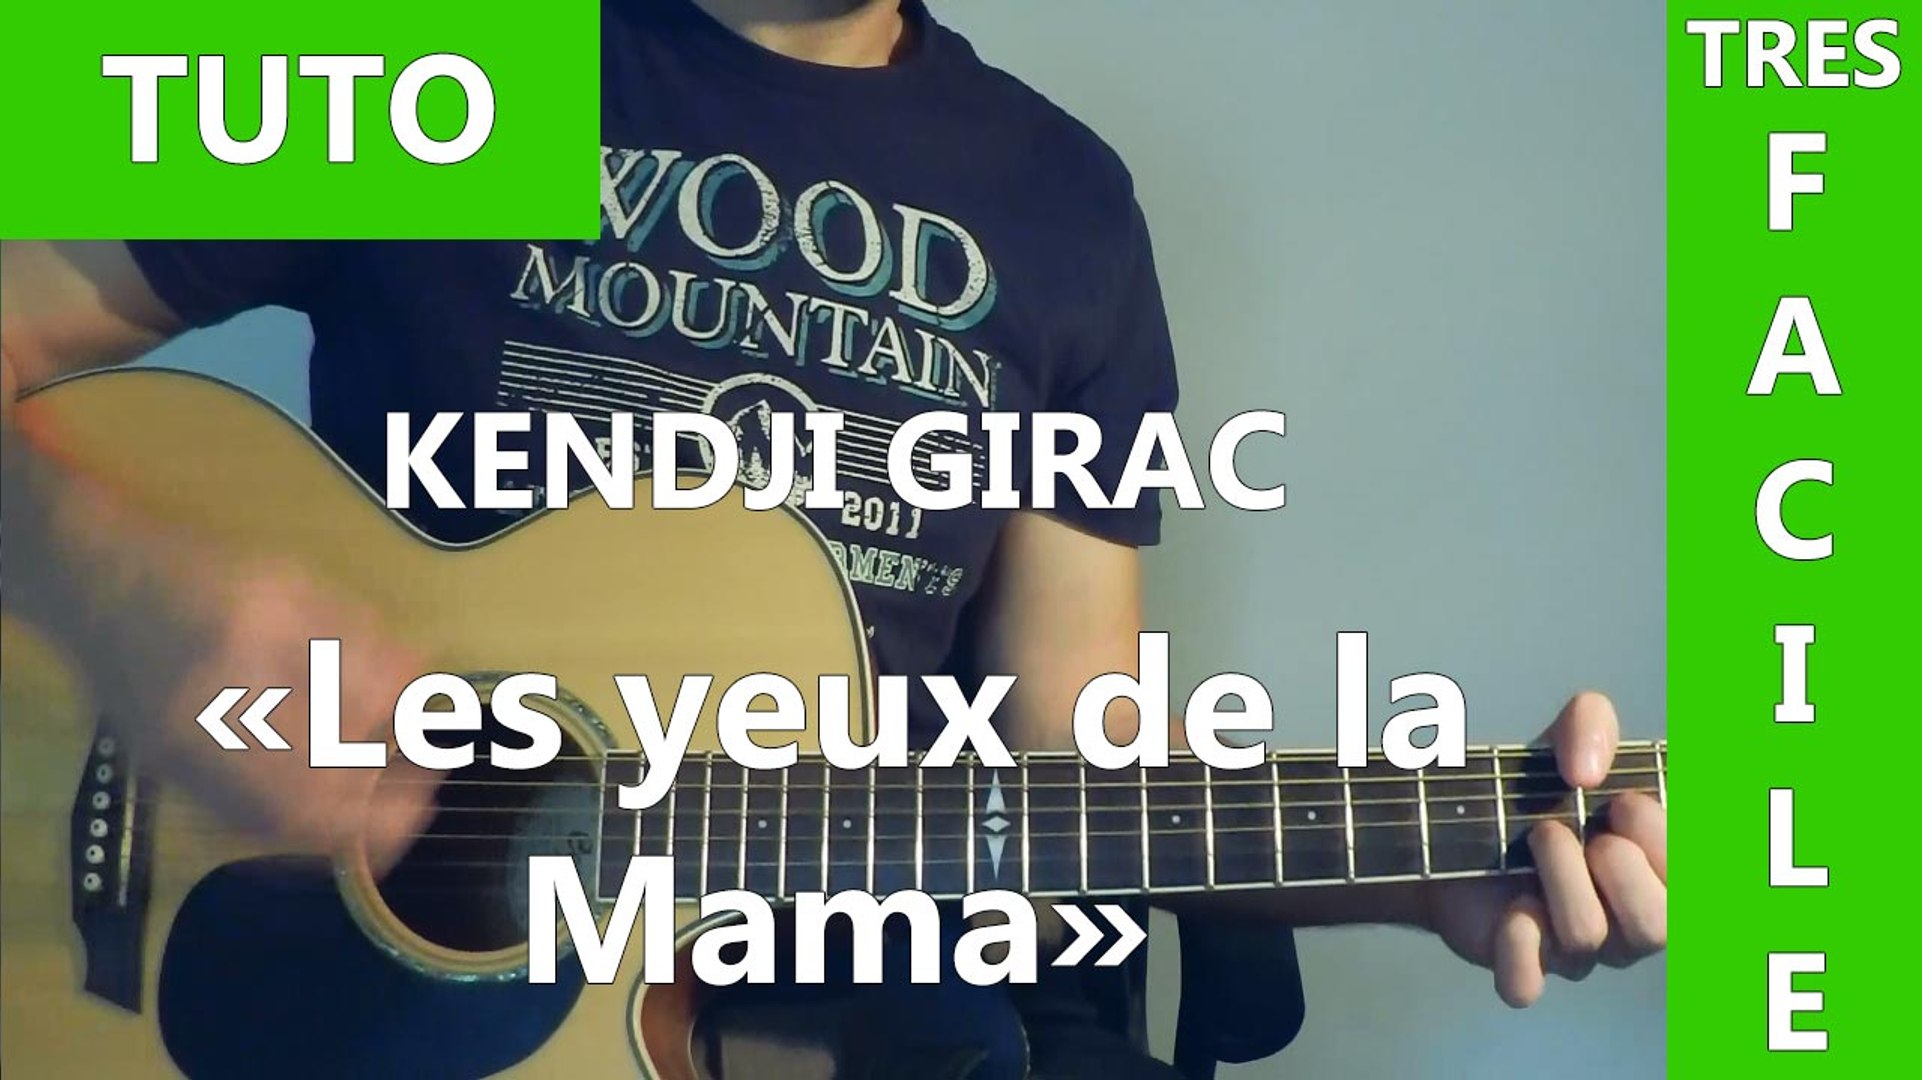 Les Yeux De La Mama - Kendji Girac - TUTO Guitare - Vidéo Dailymotion